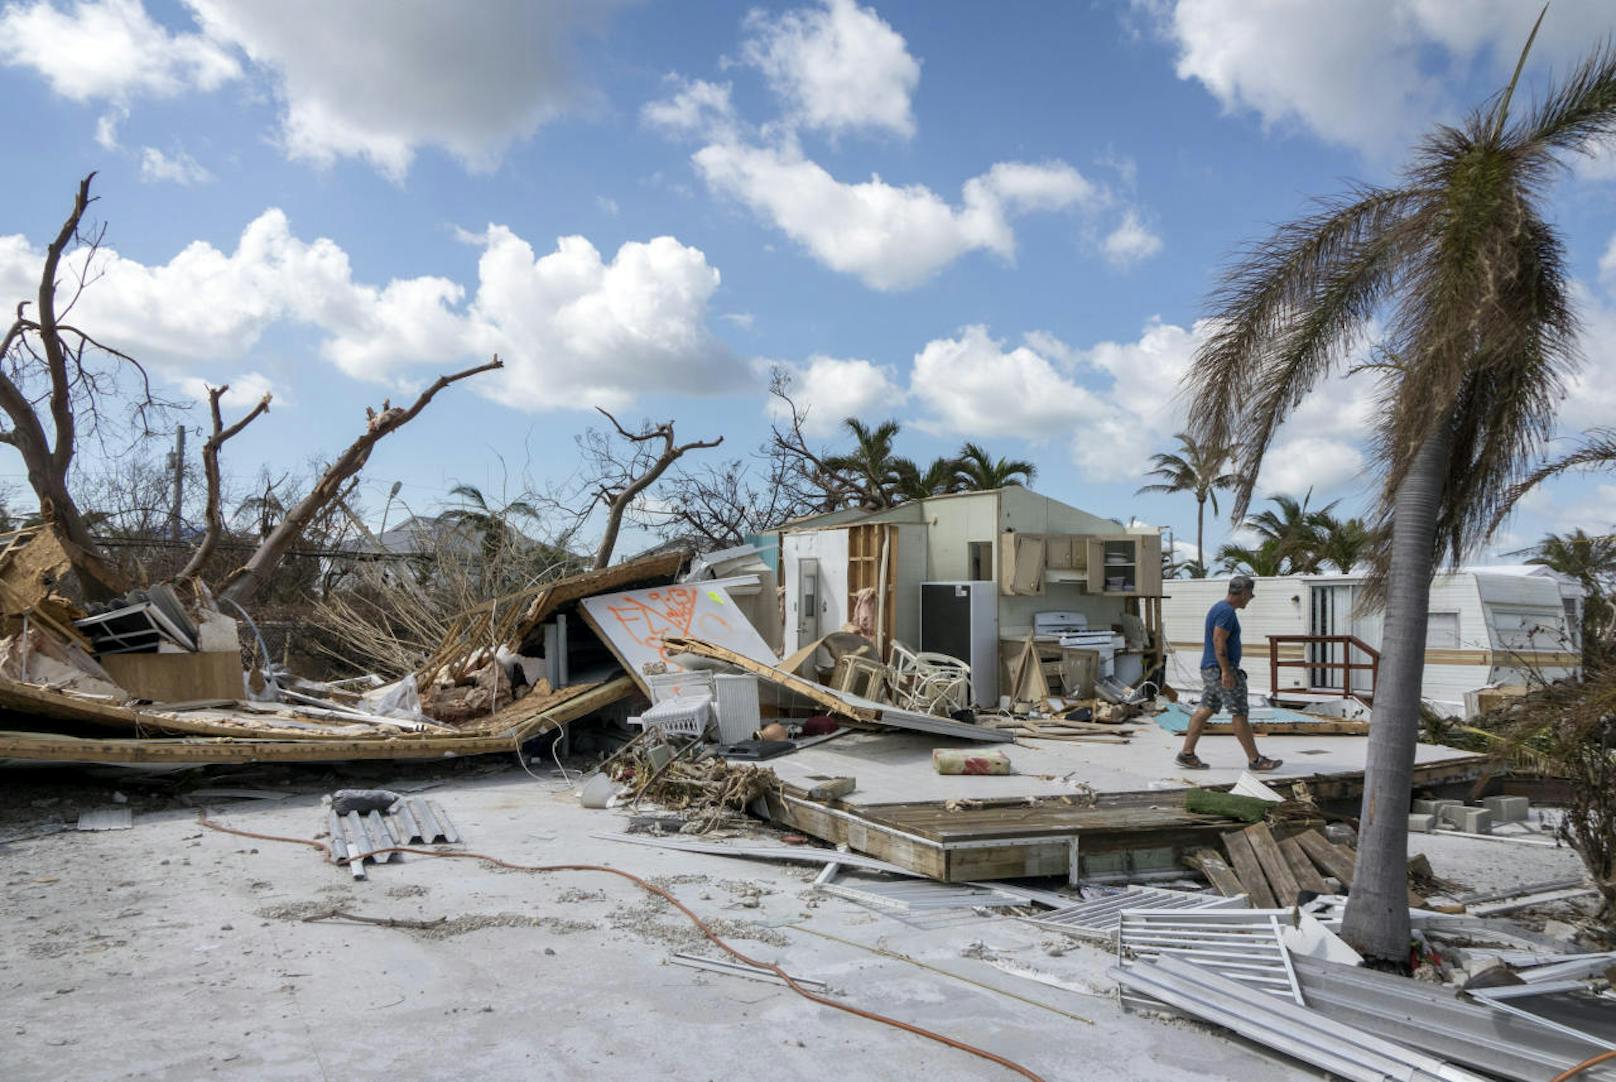 <b>5. September 2017: </b> Wenige Tage nach Harveys Verwüstungen hatte <b>Hurrikan Irma</b> auf dem Weg in die Karibik dramatisch an Kraft gewonnen und war der stärkste Sturm, der jemals auf dem offenen Atlantik gemessen wurde. US-Präsident Trump musste den Notstand für Florida, Puerto Rico und die Amerikanischen Jungferninseln ausrufen. 

<b>Mehr Infos: </b> <a href="https://www.heute.at/welt/news/story/Irma-ist-staerkster-Sturm-aller-Zeiten-im-Atlantik-57406417" target="_blank">Irma ist stärkster Sturm aller Zeiten im Atlantik</a>